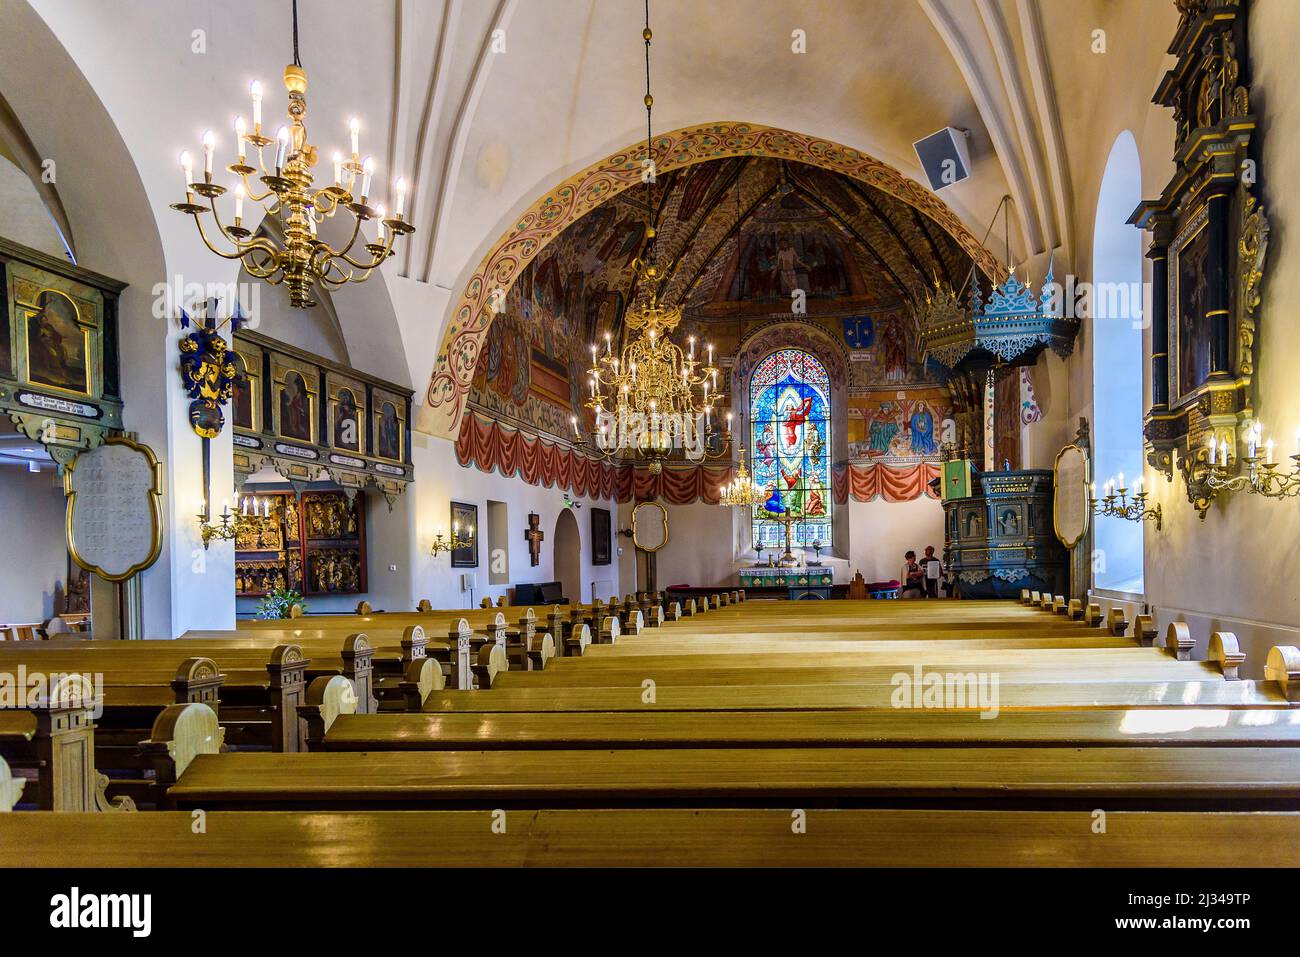 Prise de vue en intérieur dans l'église Sainte-Croix, Rauma, côte ouest, Finlande Banque D'Images